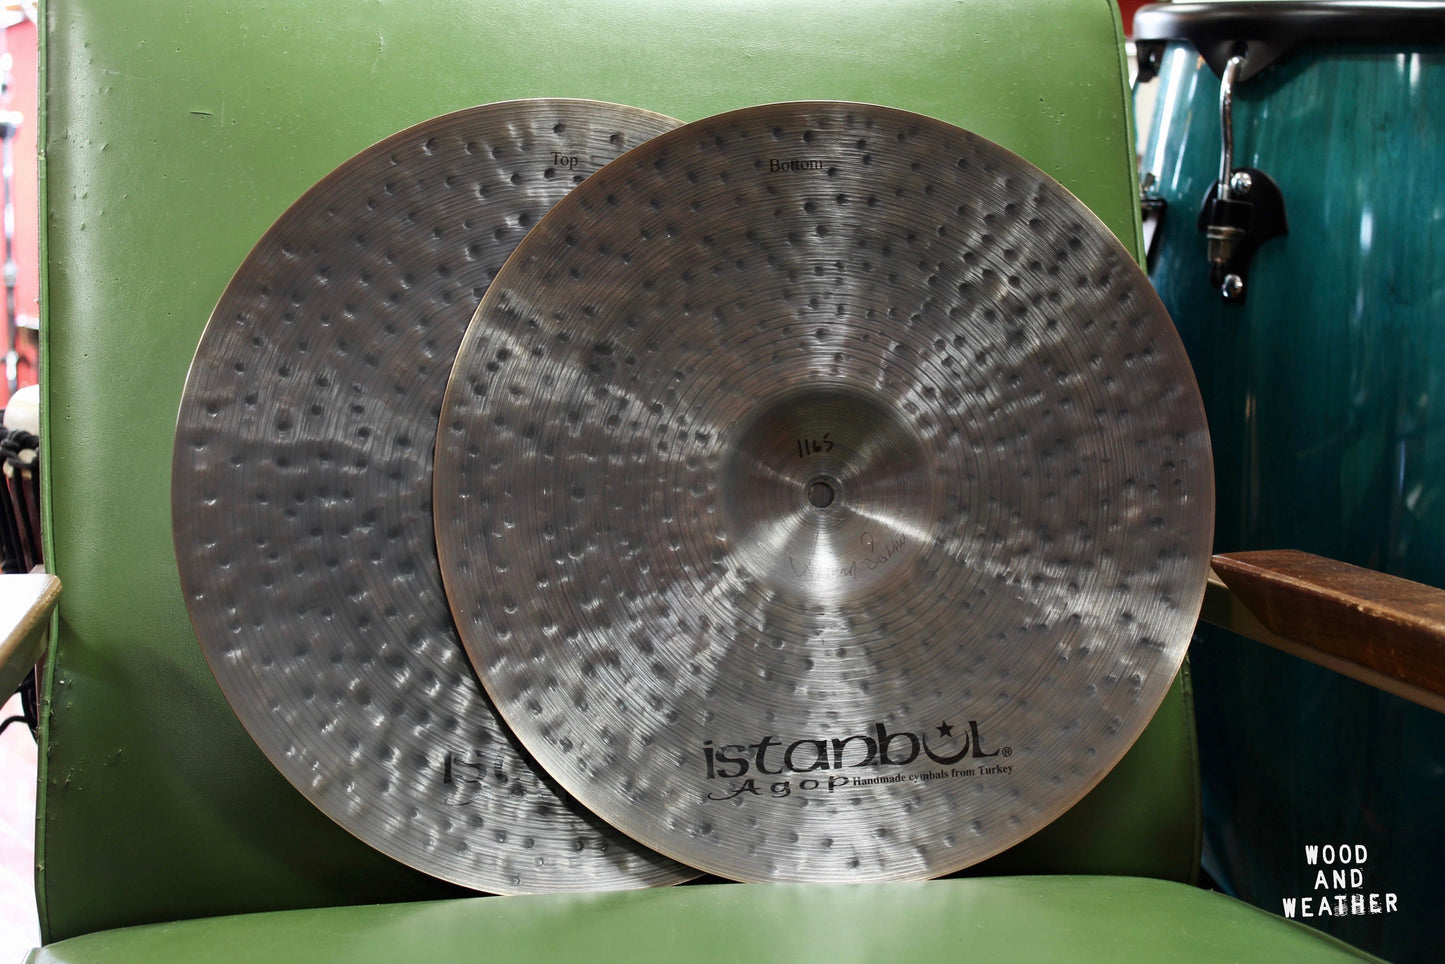 Istanbul Agop 15" Cindy Blackman Signature OM Hi-Hat Cymbals 955/1165g